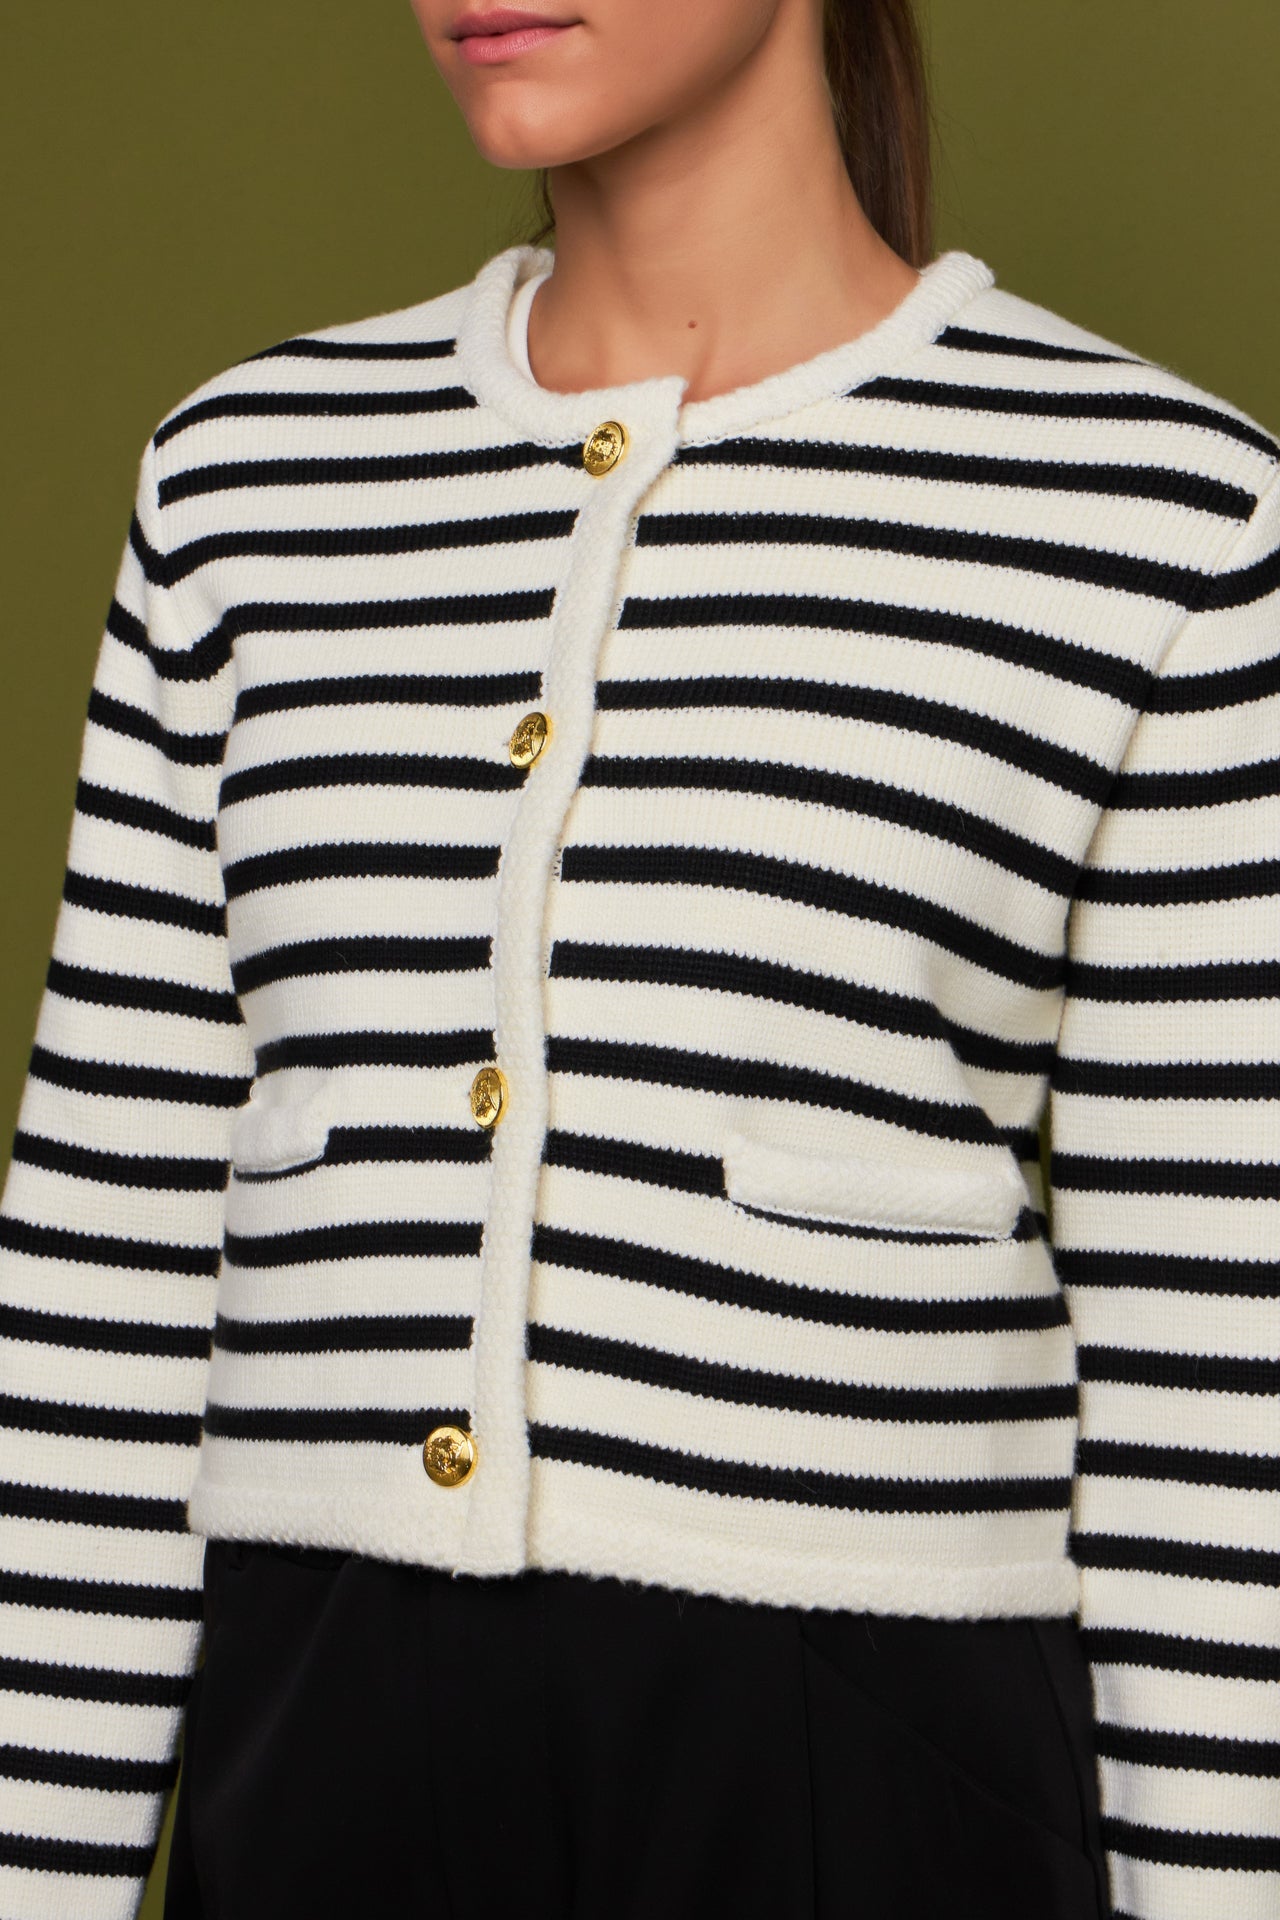 Louis Vuitton Mixed Stripes Knit Cardigan Black Stripe. Size L0